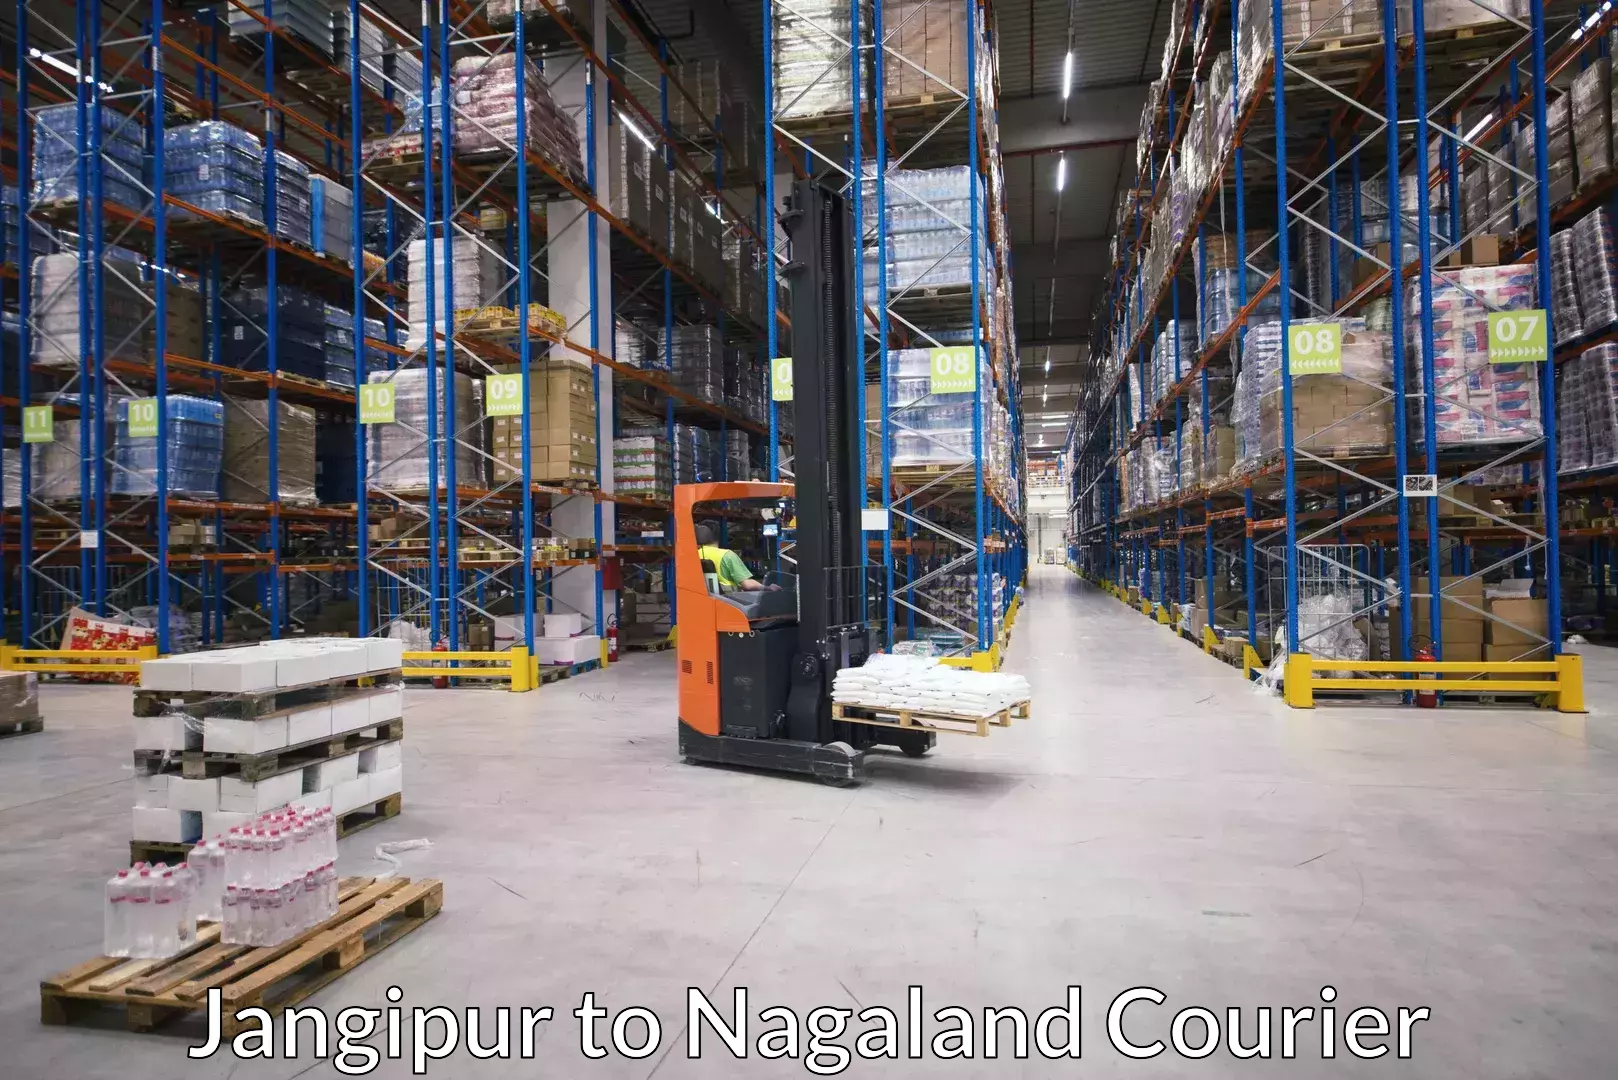 Luggage delivery optimization Jangipur to NIT Nagaland